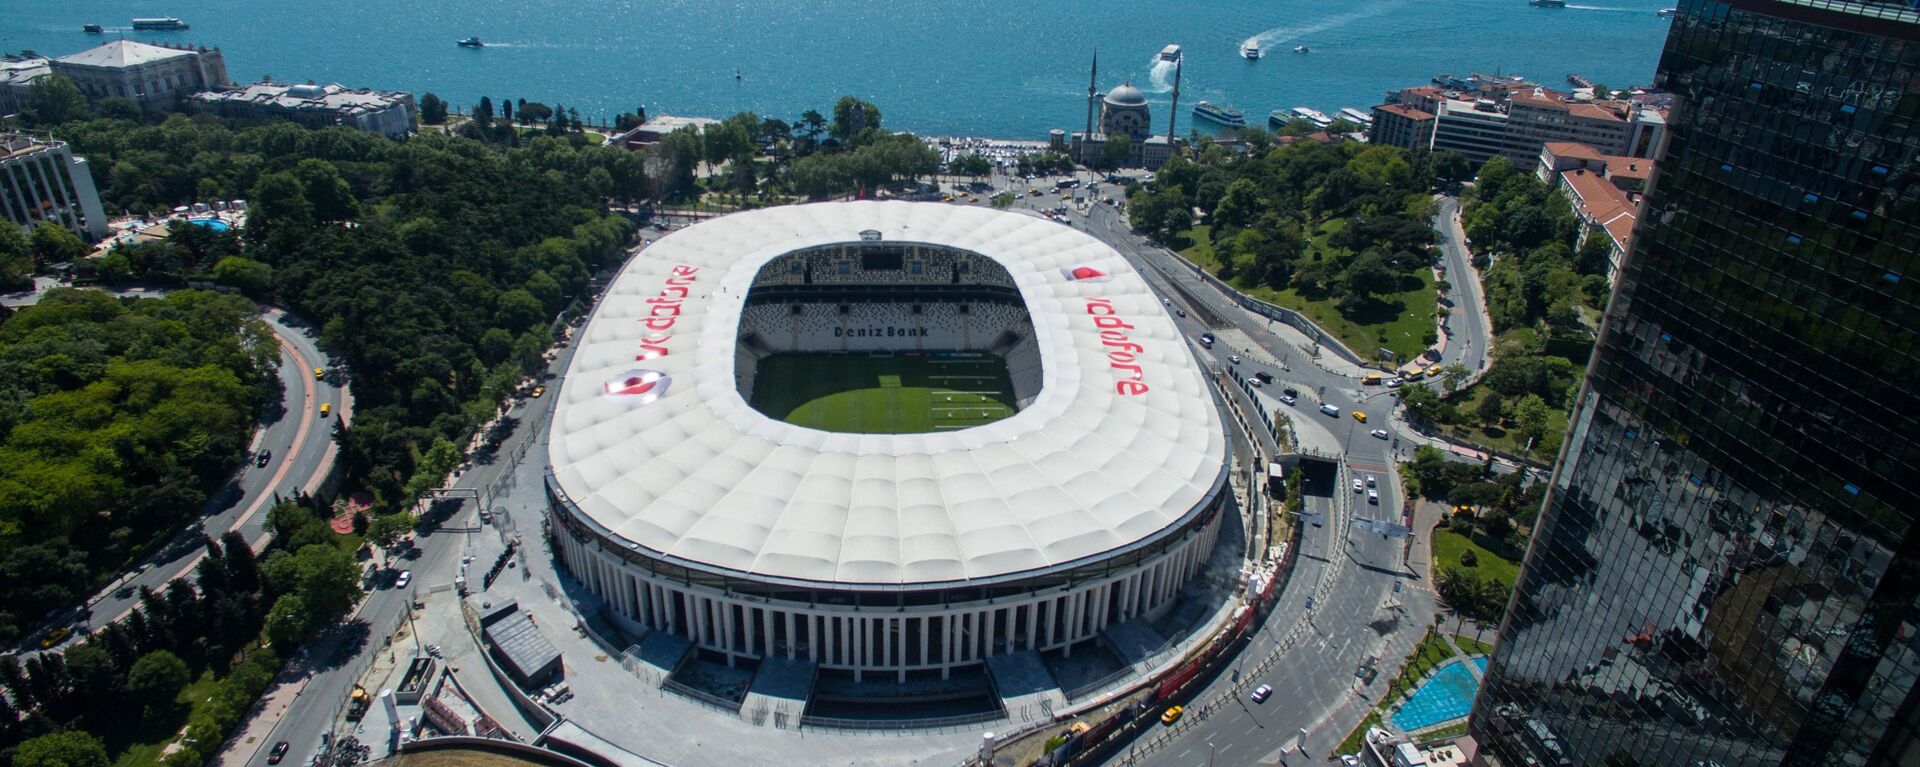 İstanbulspor'un Beşiktaş stadı talebi reddedildi